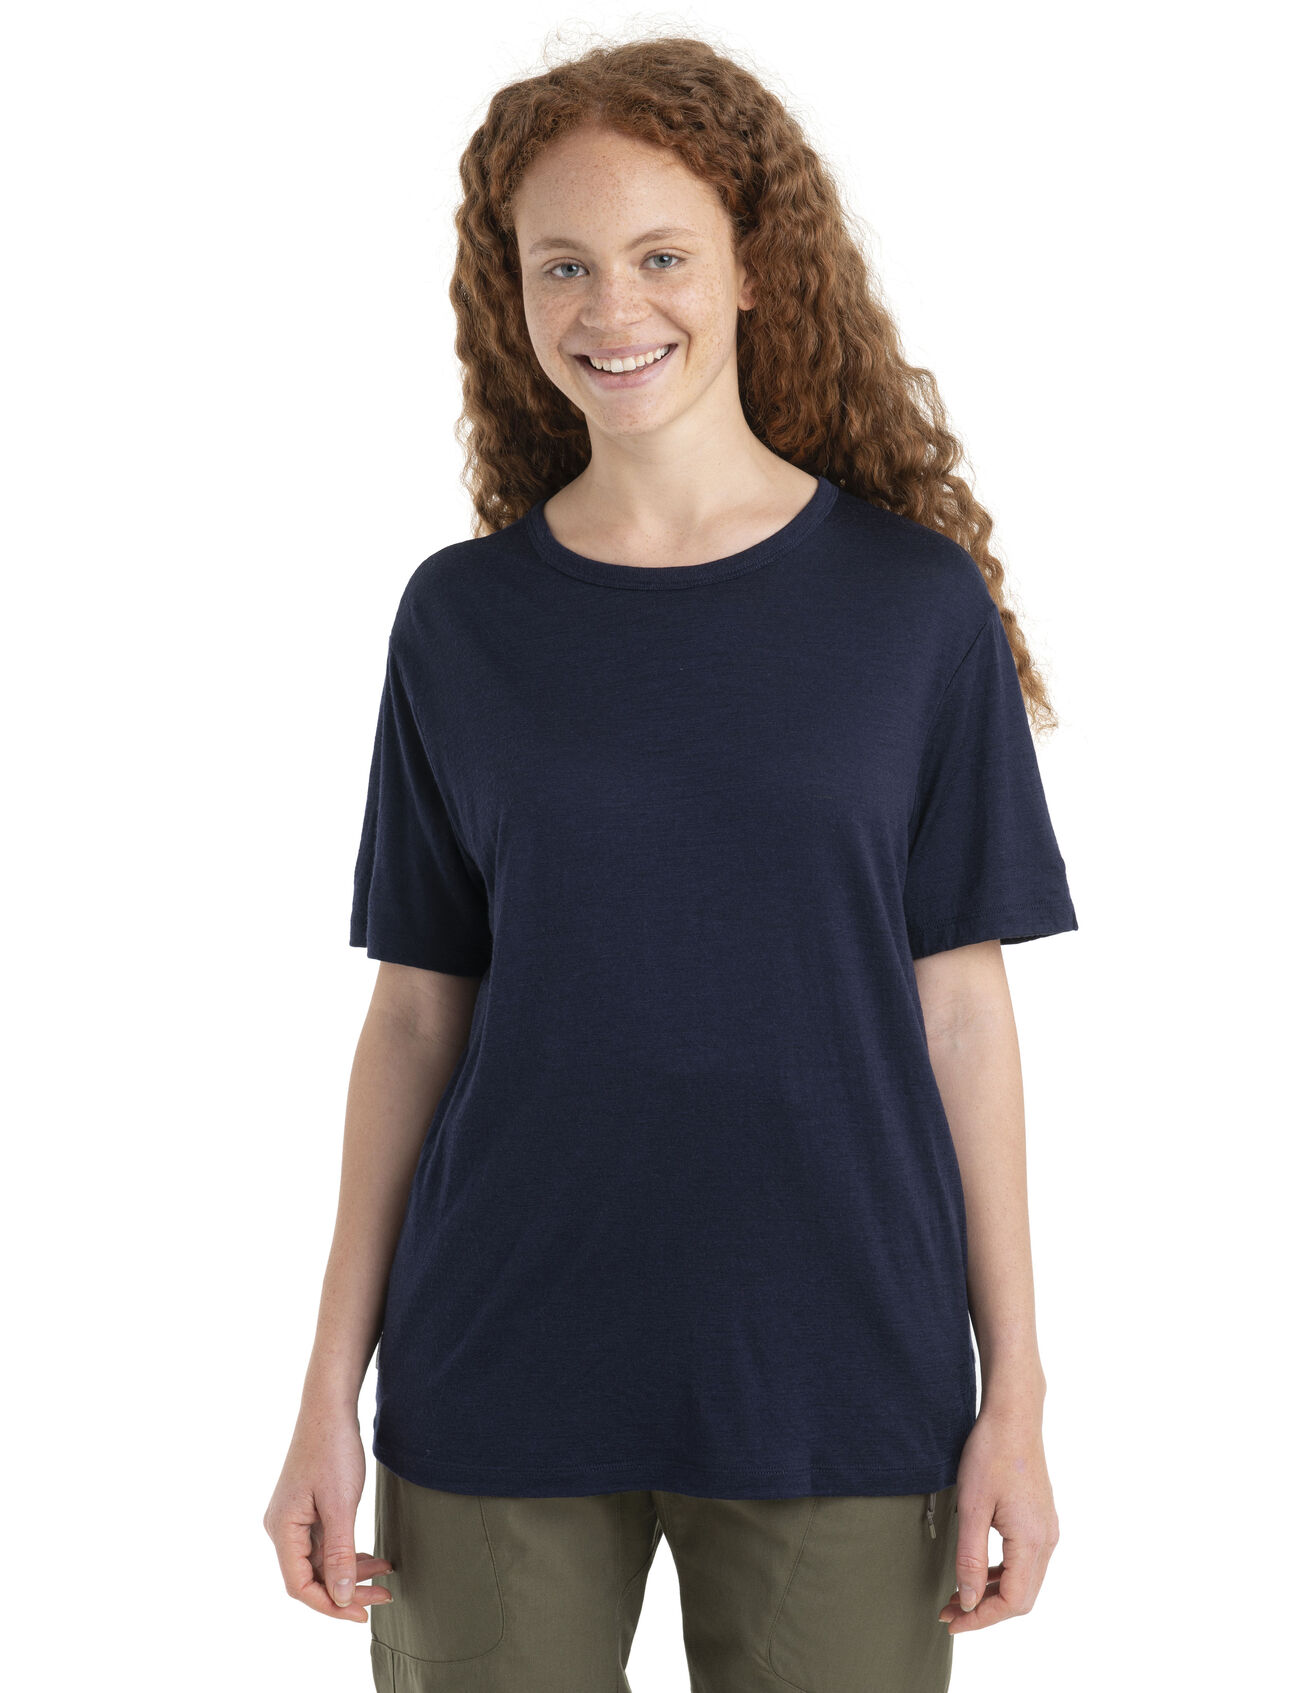 T-shirt Granary en mérinos Femmes Décontracté et classique en douce laine mérinos respirante, le t-shirt Granary vous procure confort et style tous les jours.